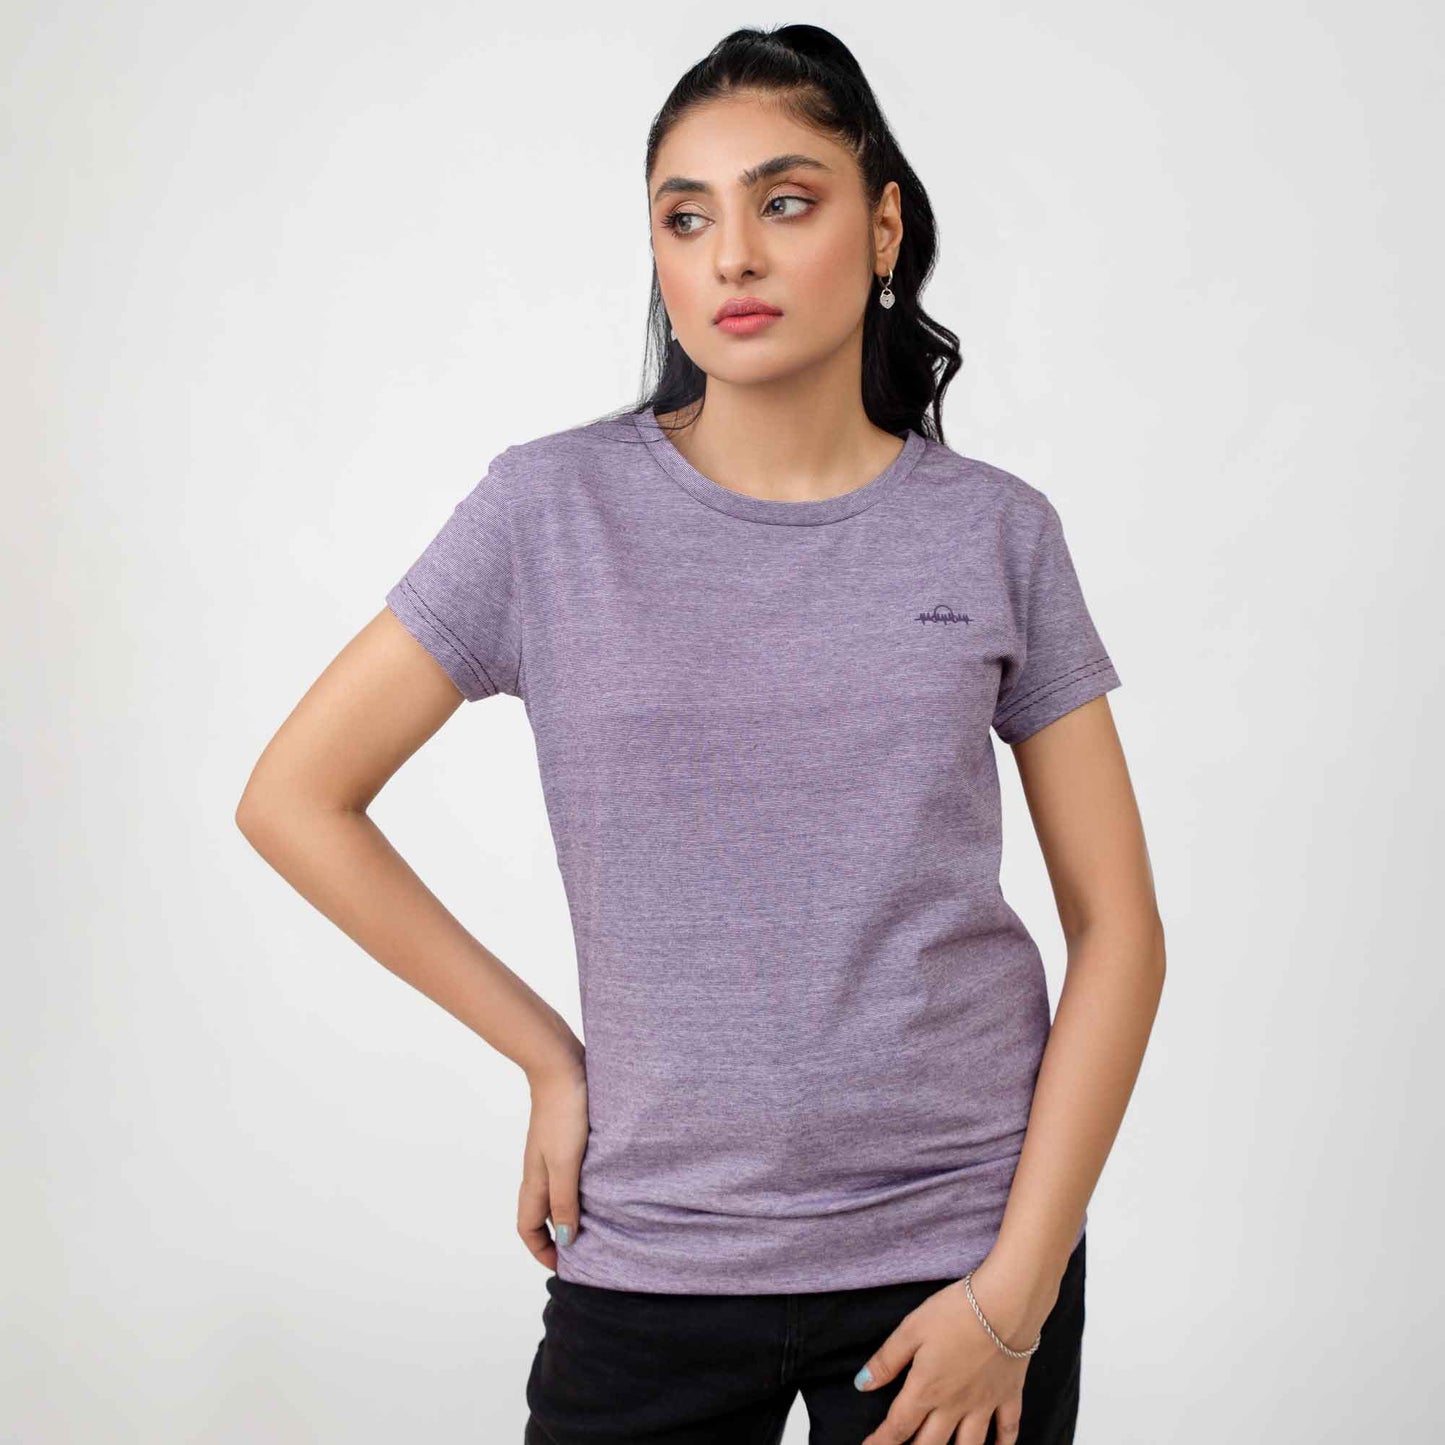 Madamadam Women's Graphic Short Sleeve Tee Shirt Women's Tee Shirt MADAMADAM Purple S 